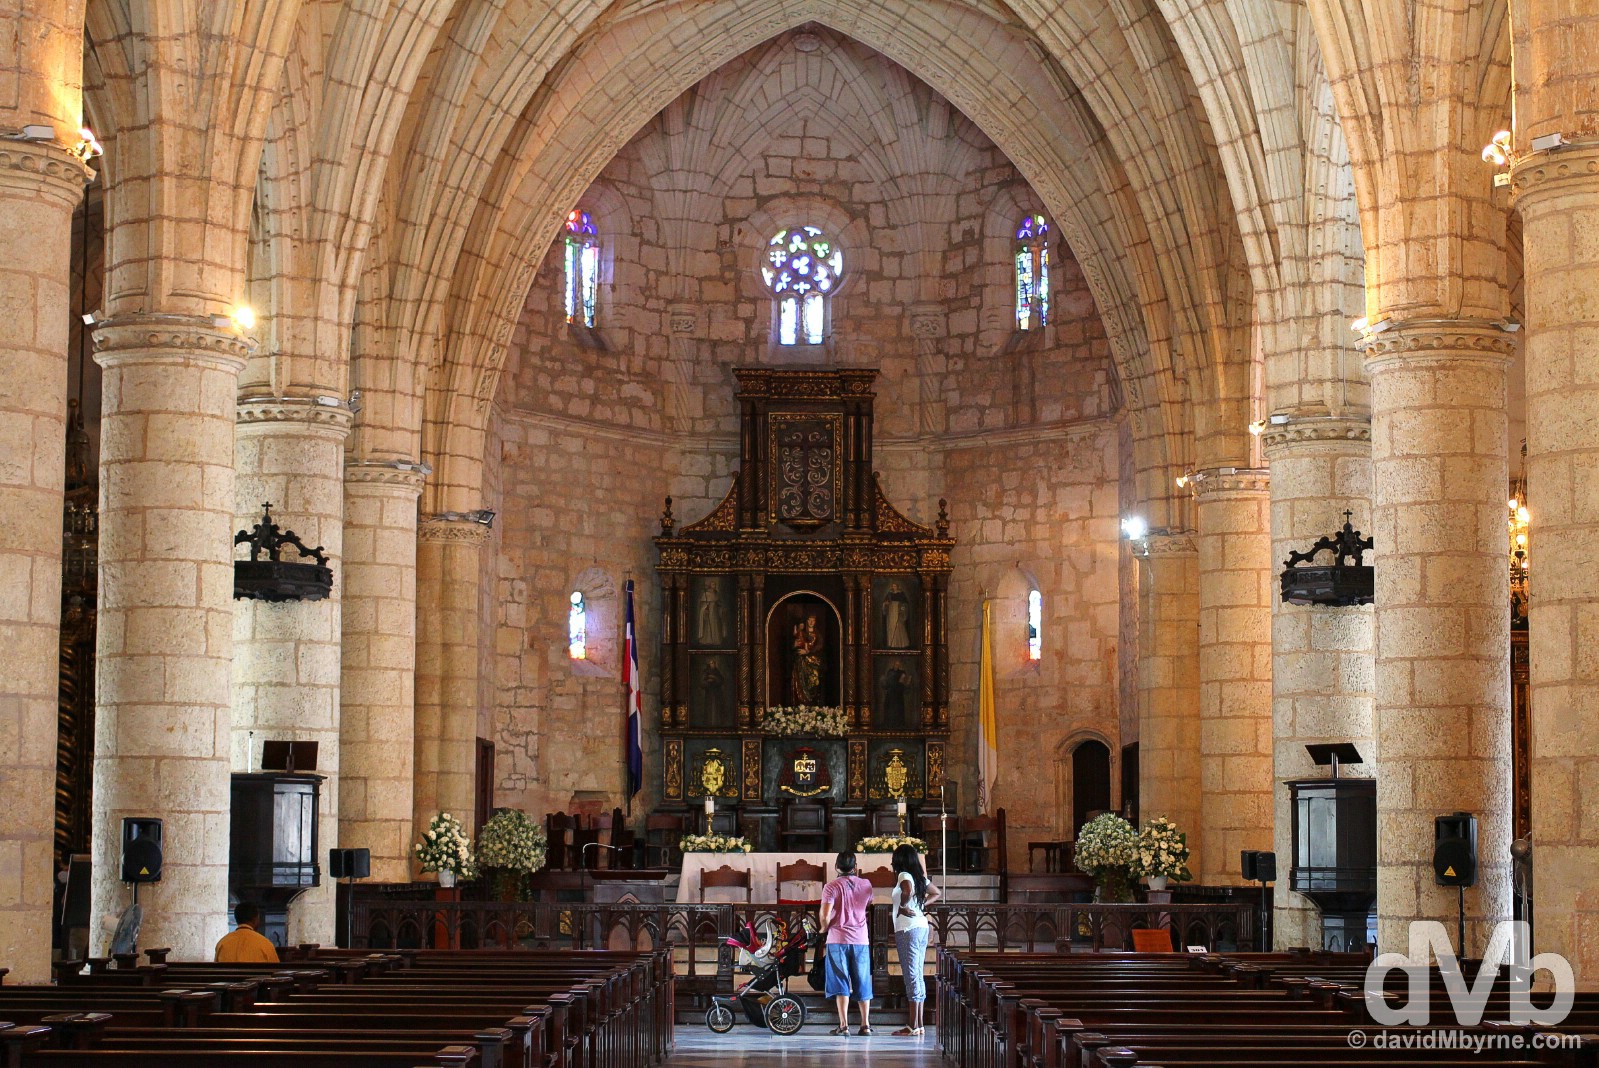 The interior of the Catedral Primada de America in Zona Colonial, Santo Domingo. Dominican Republic. May 26, 2015. 